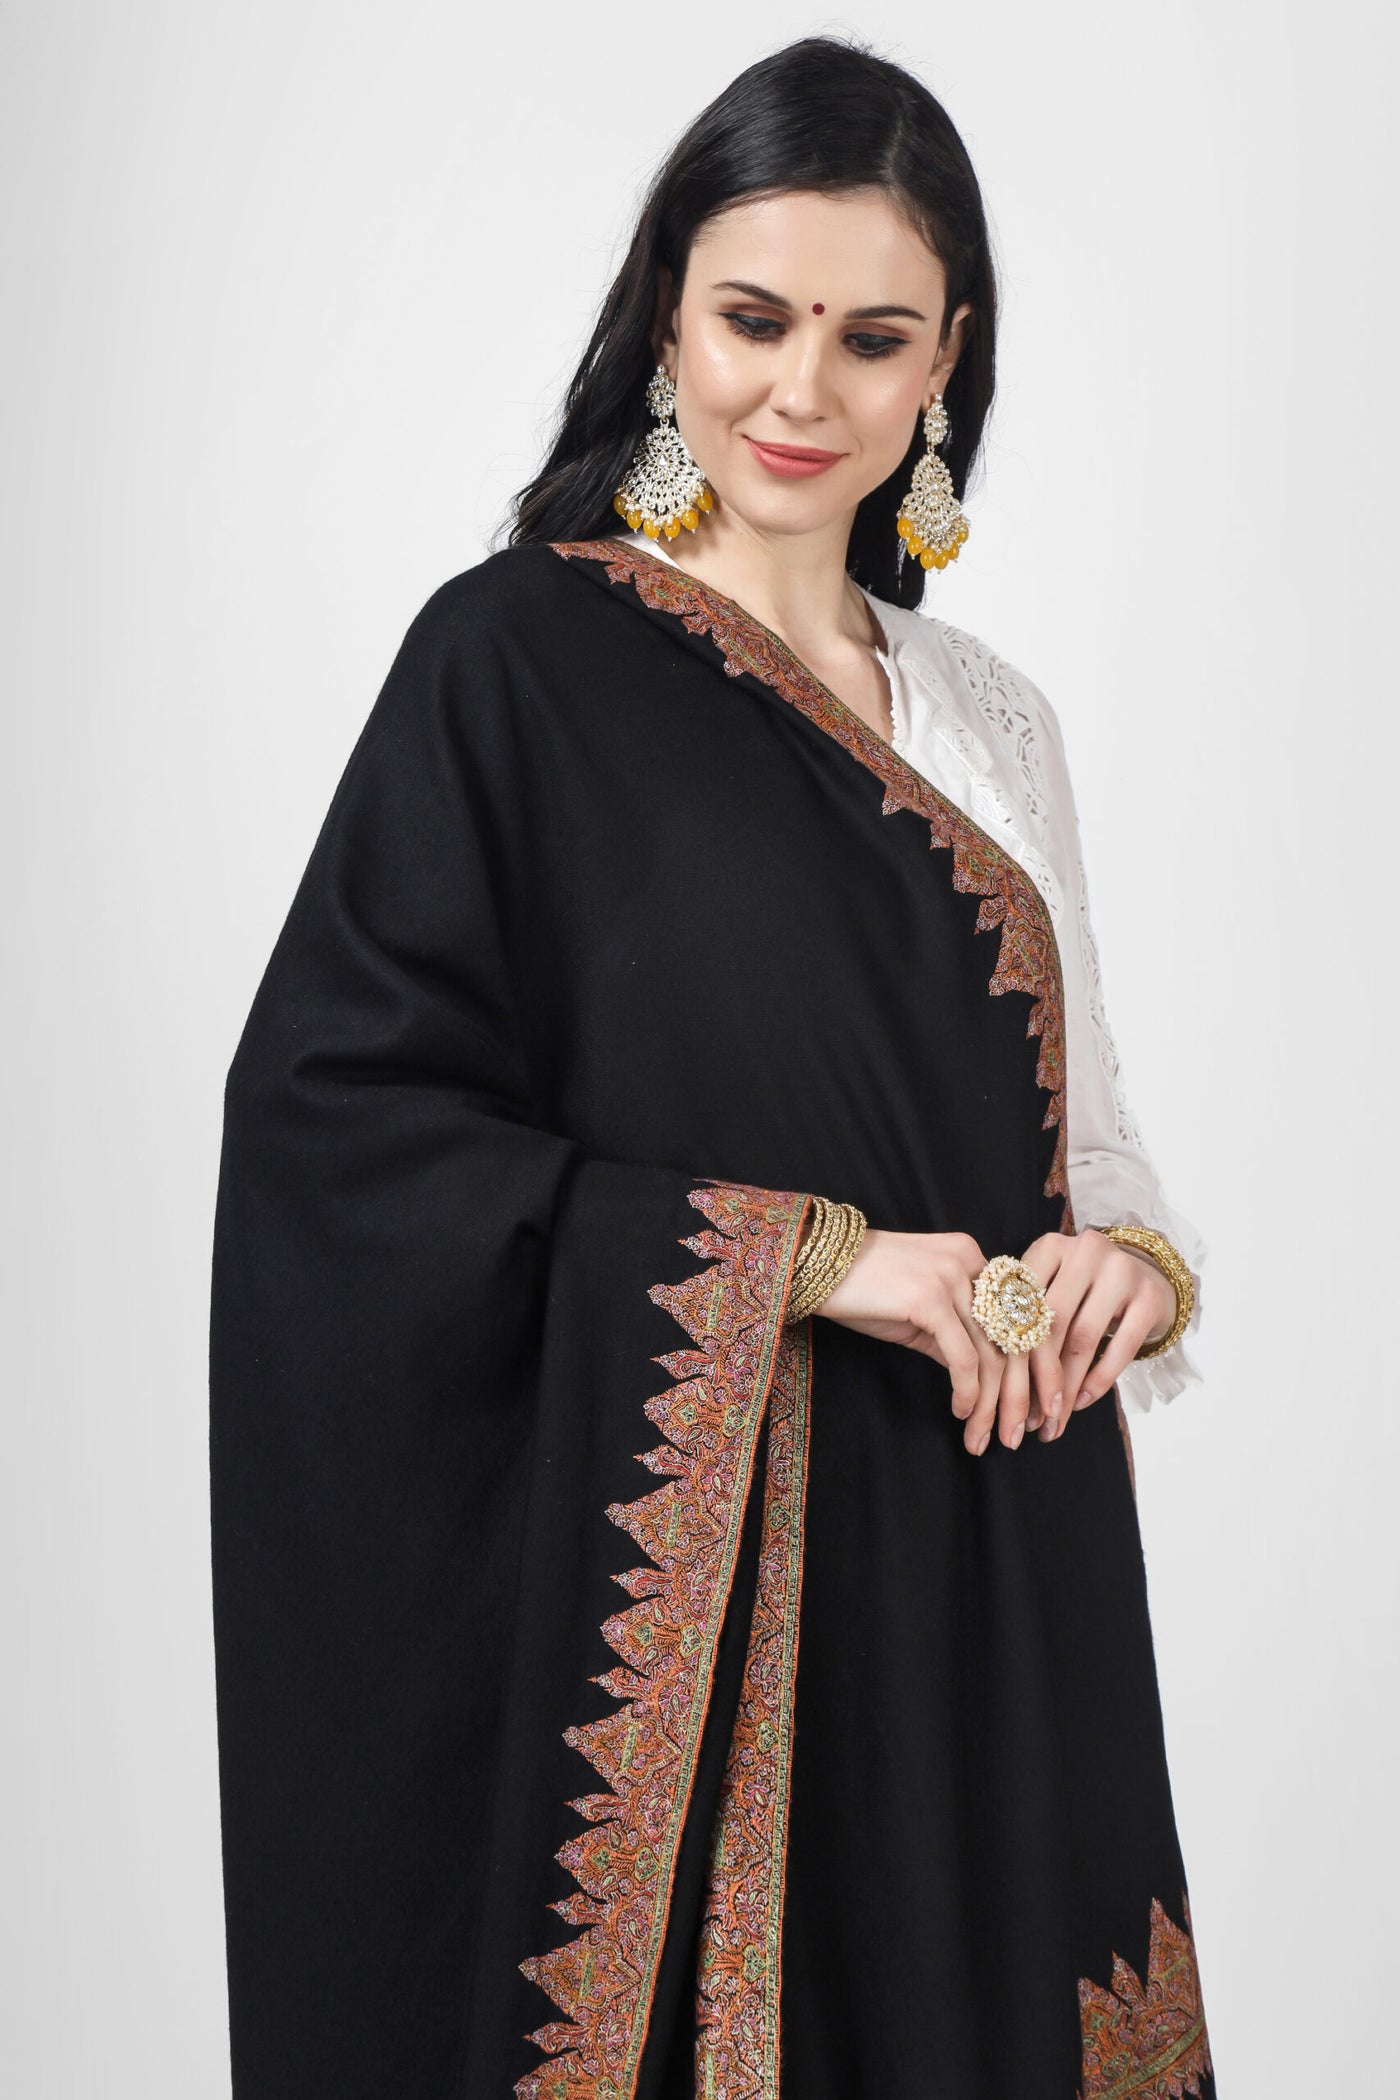 PASHMINA SHAWL - Black  Ali design Pashmina Border sozni shawl